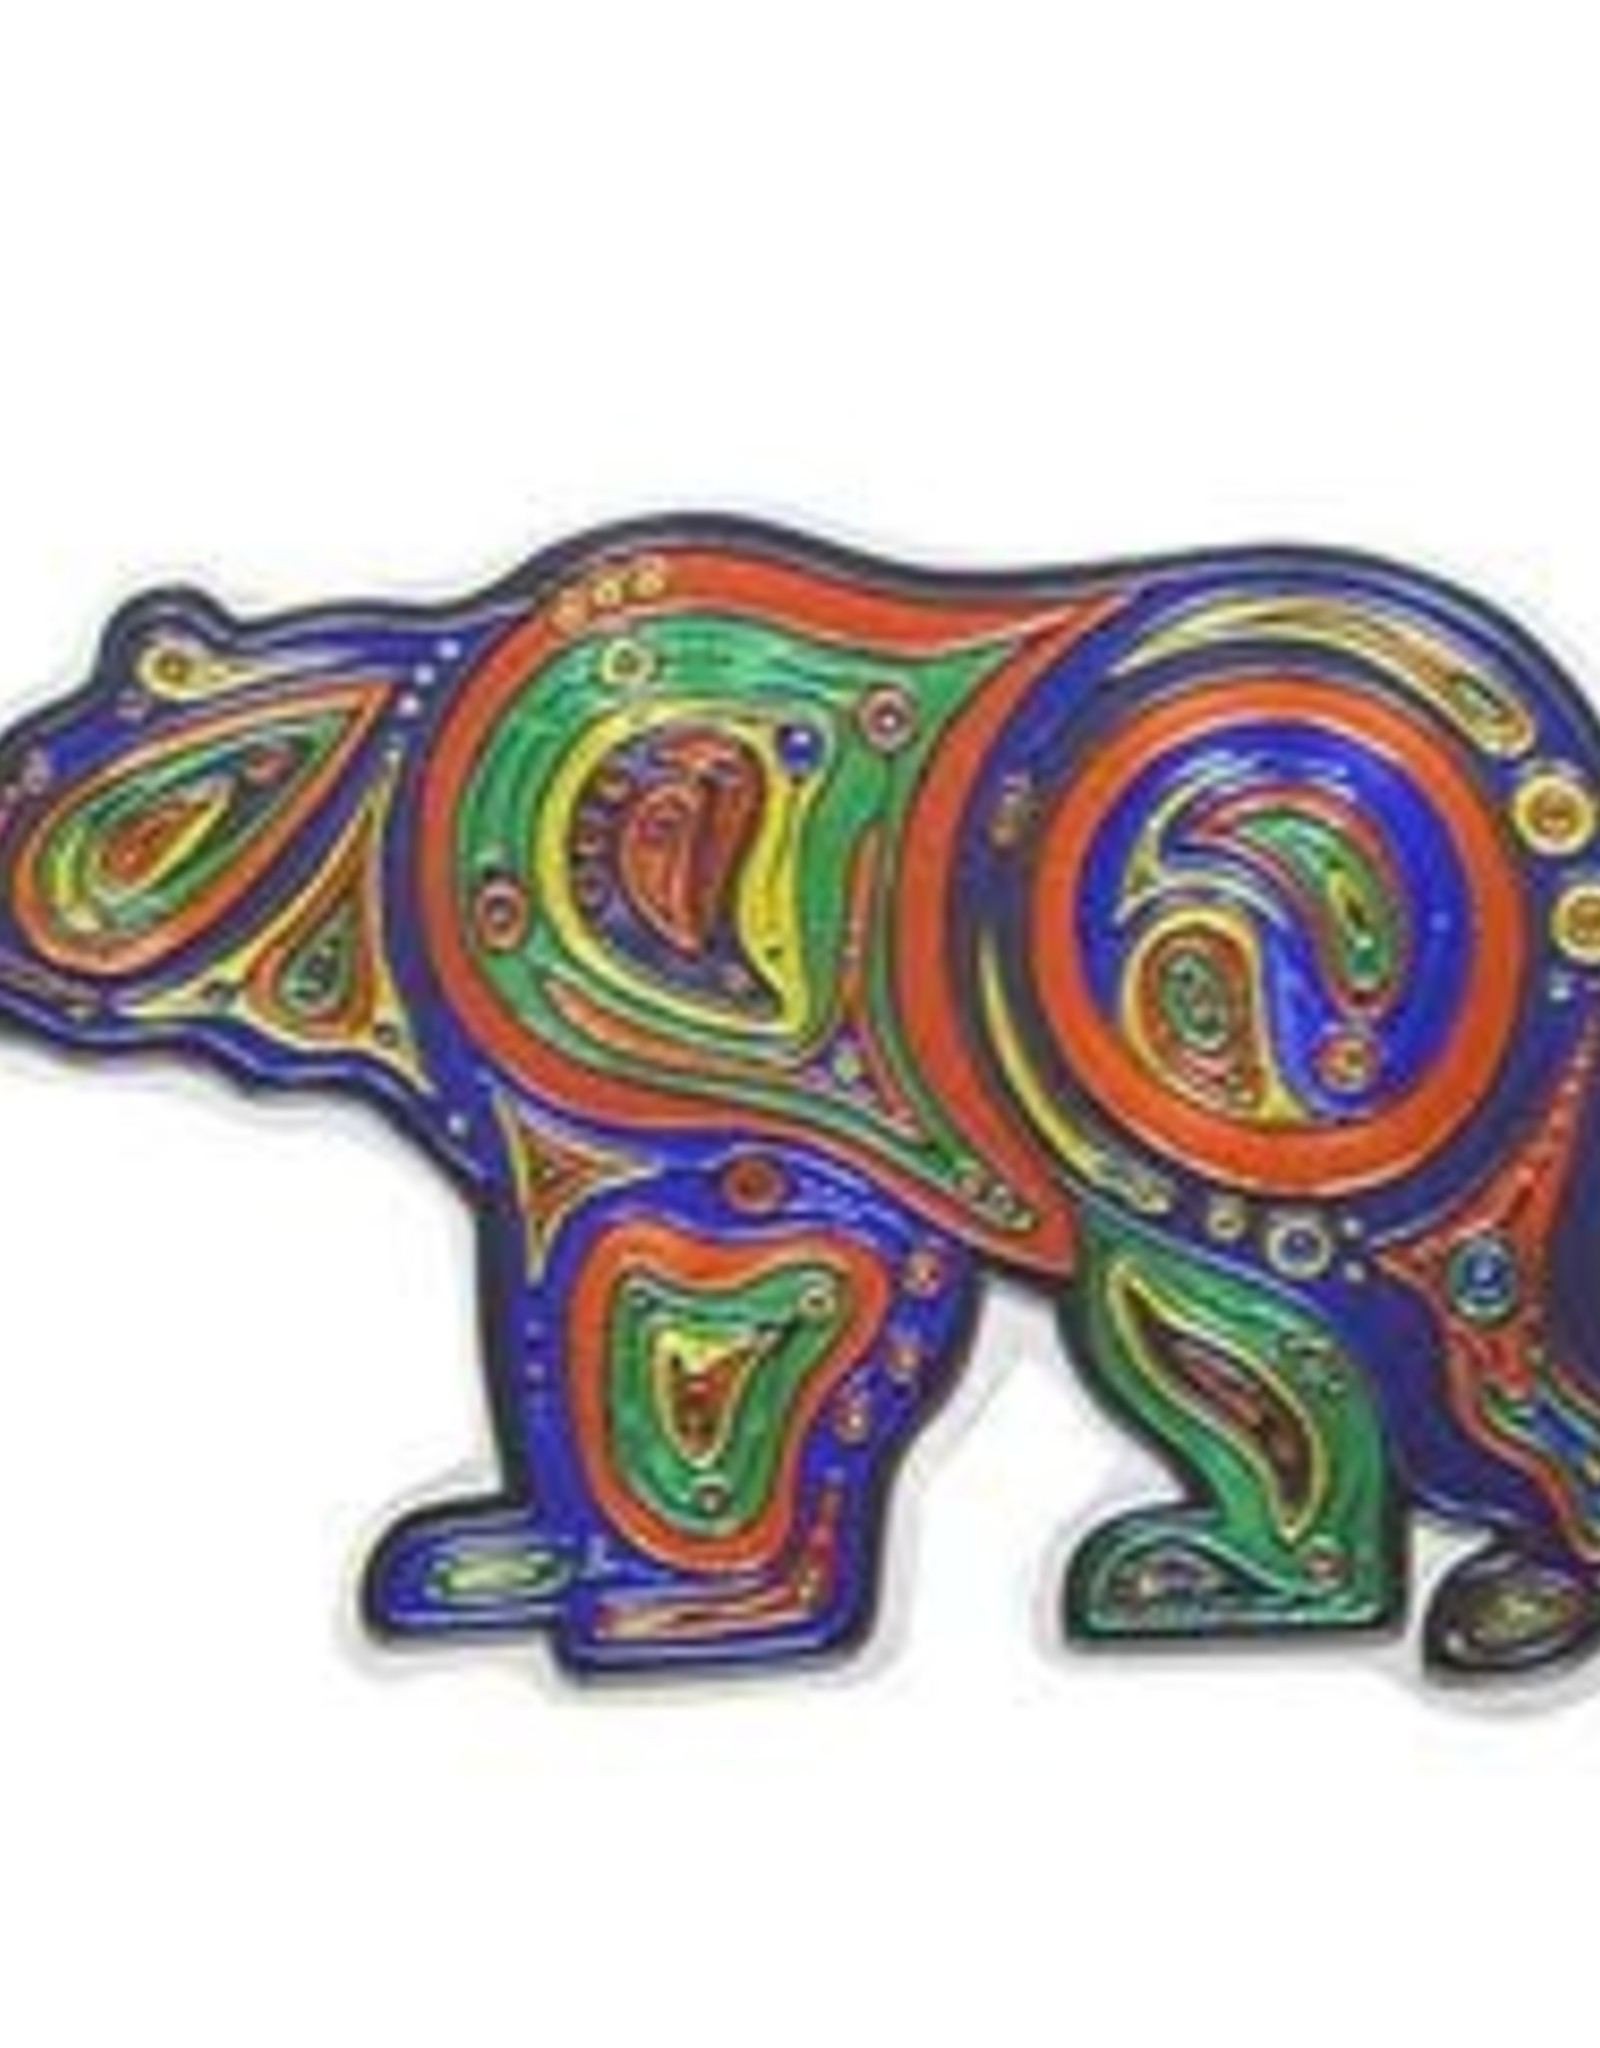 Souvenirs Bear Metallic Magnet by Liz Feyerabend